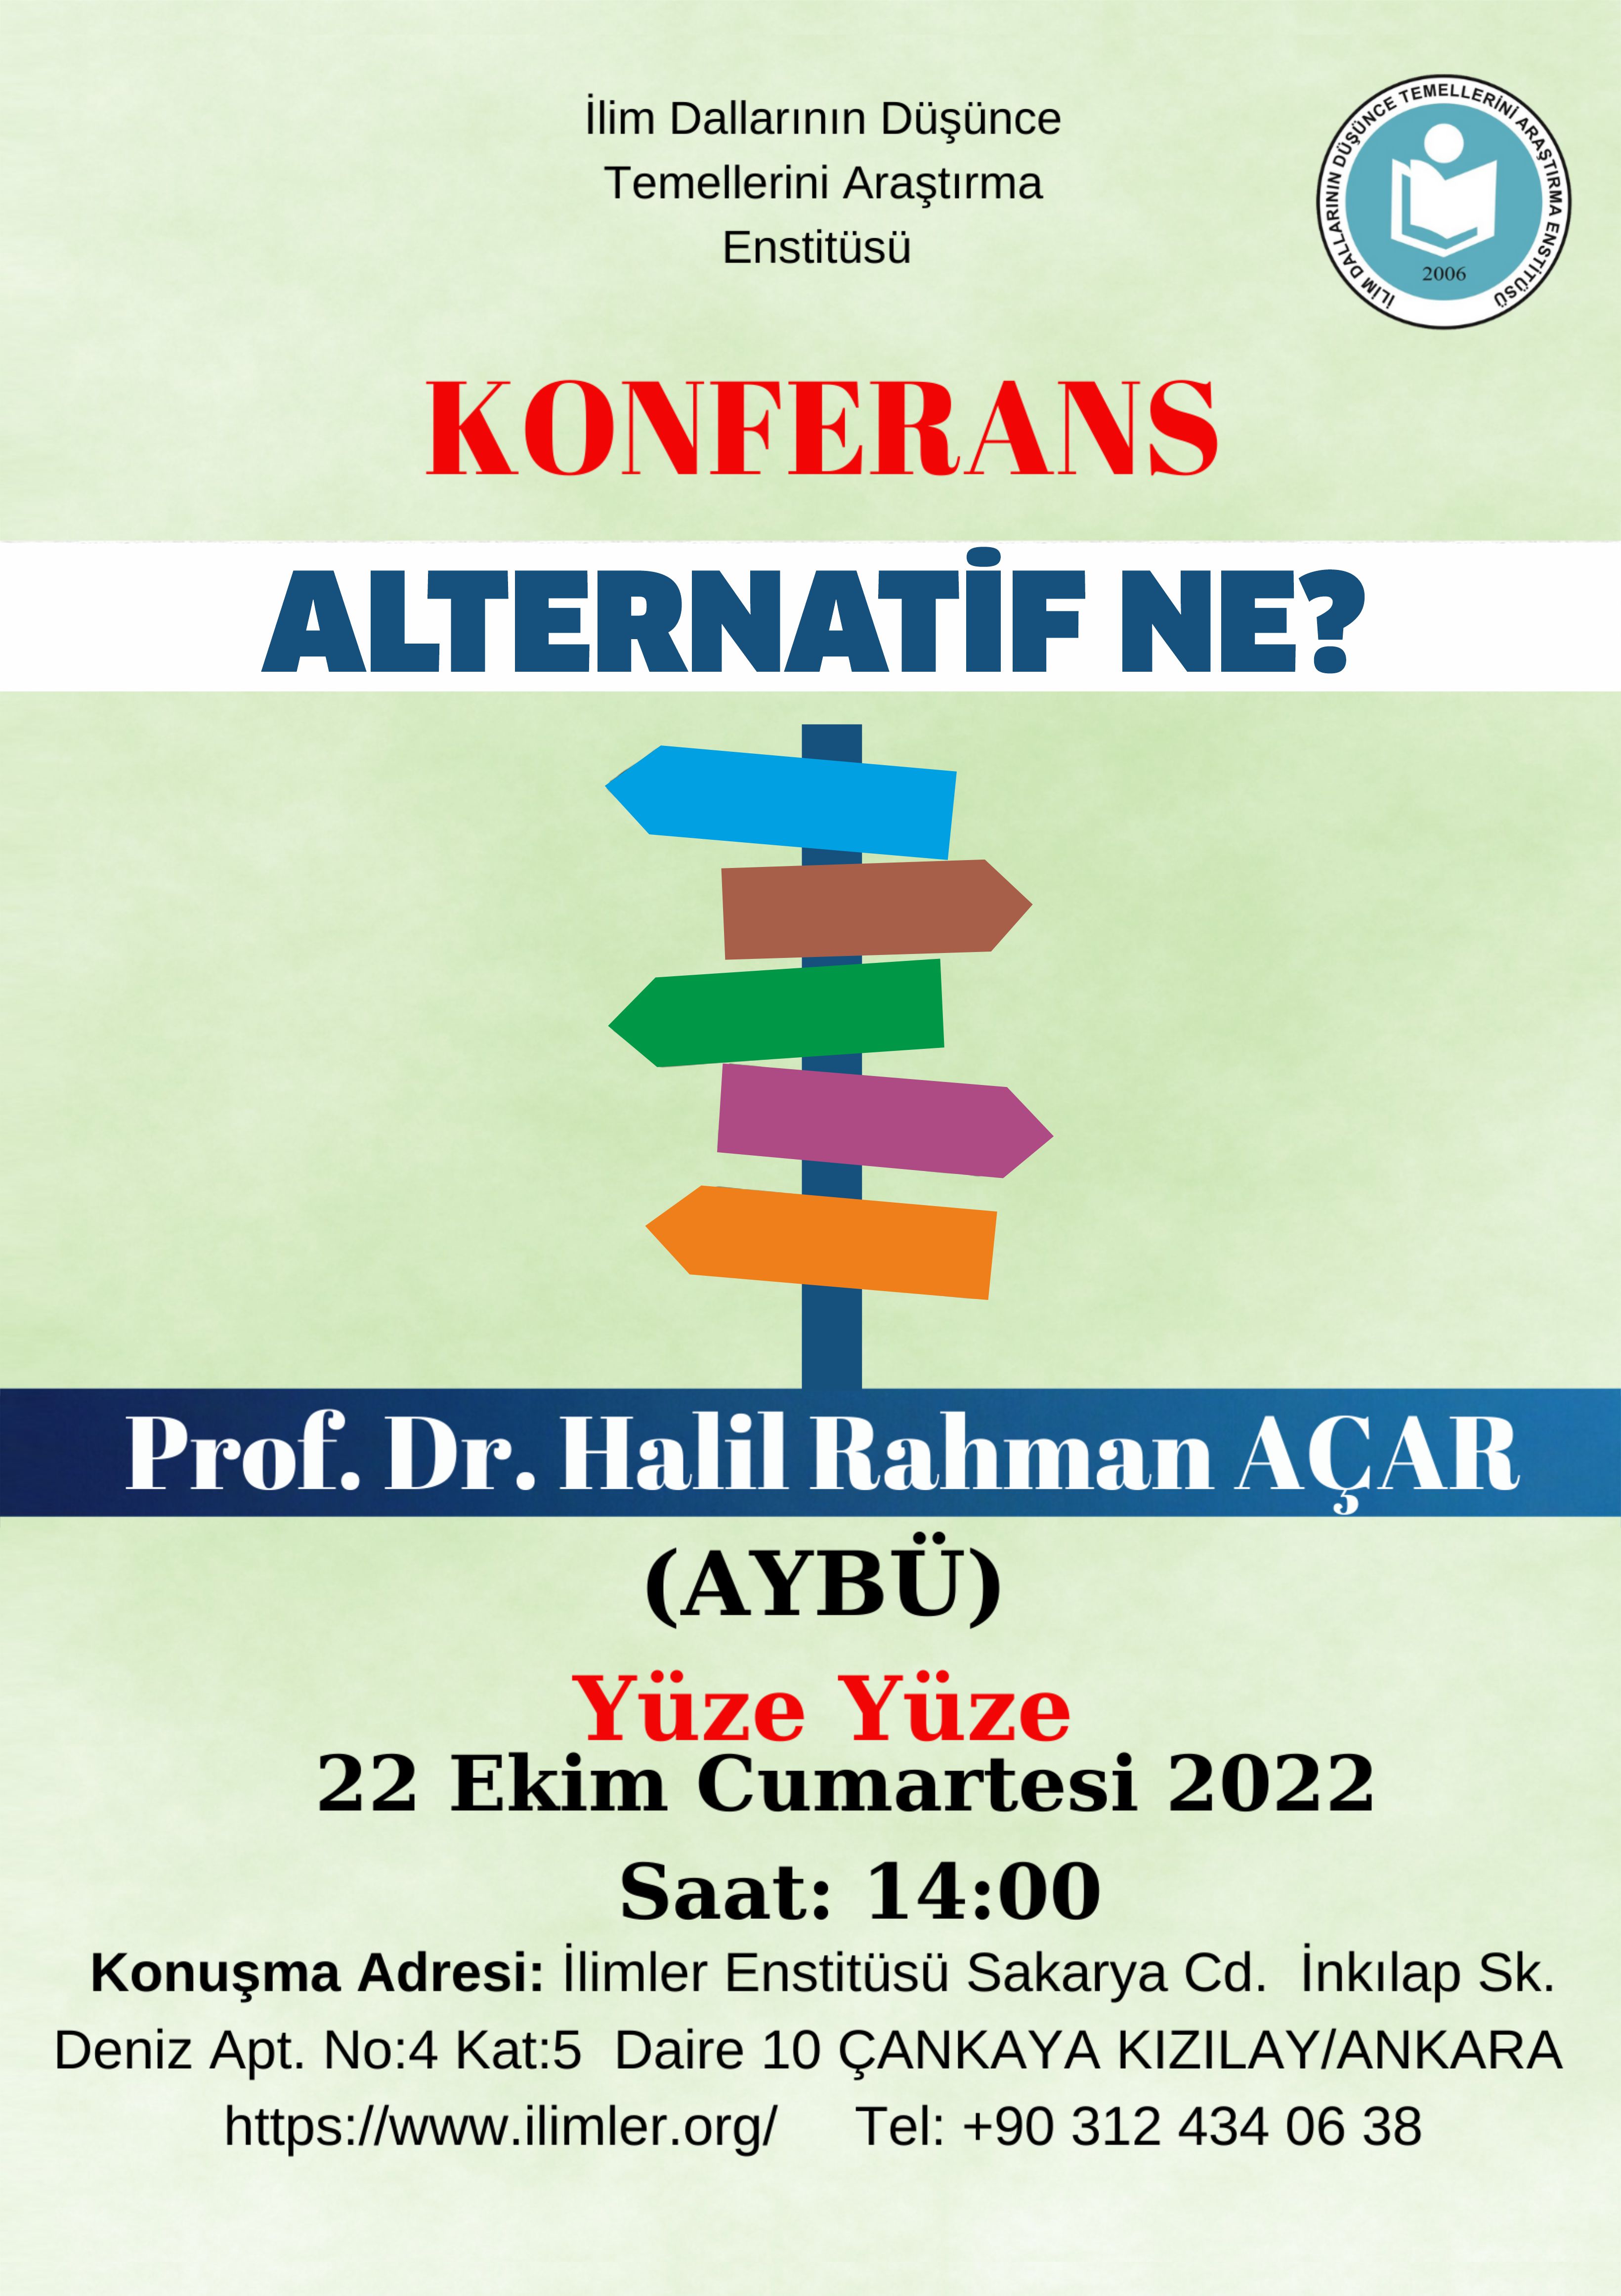 Alternatif Ne? -22.10.2022- Prof. Dr. Halil Rahman AÇAR